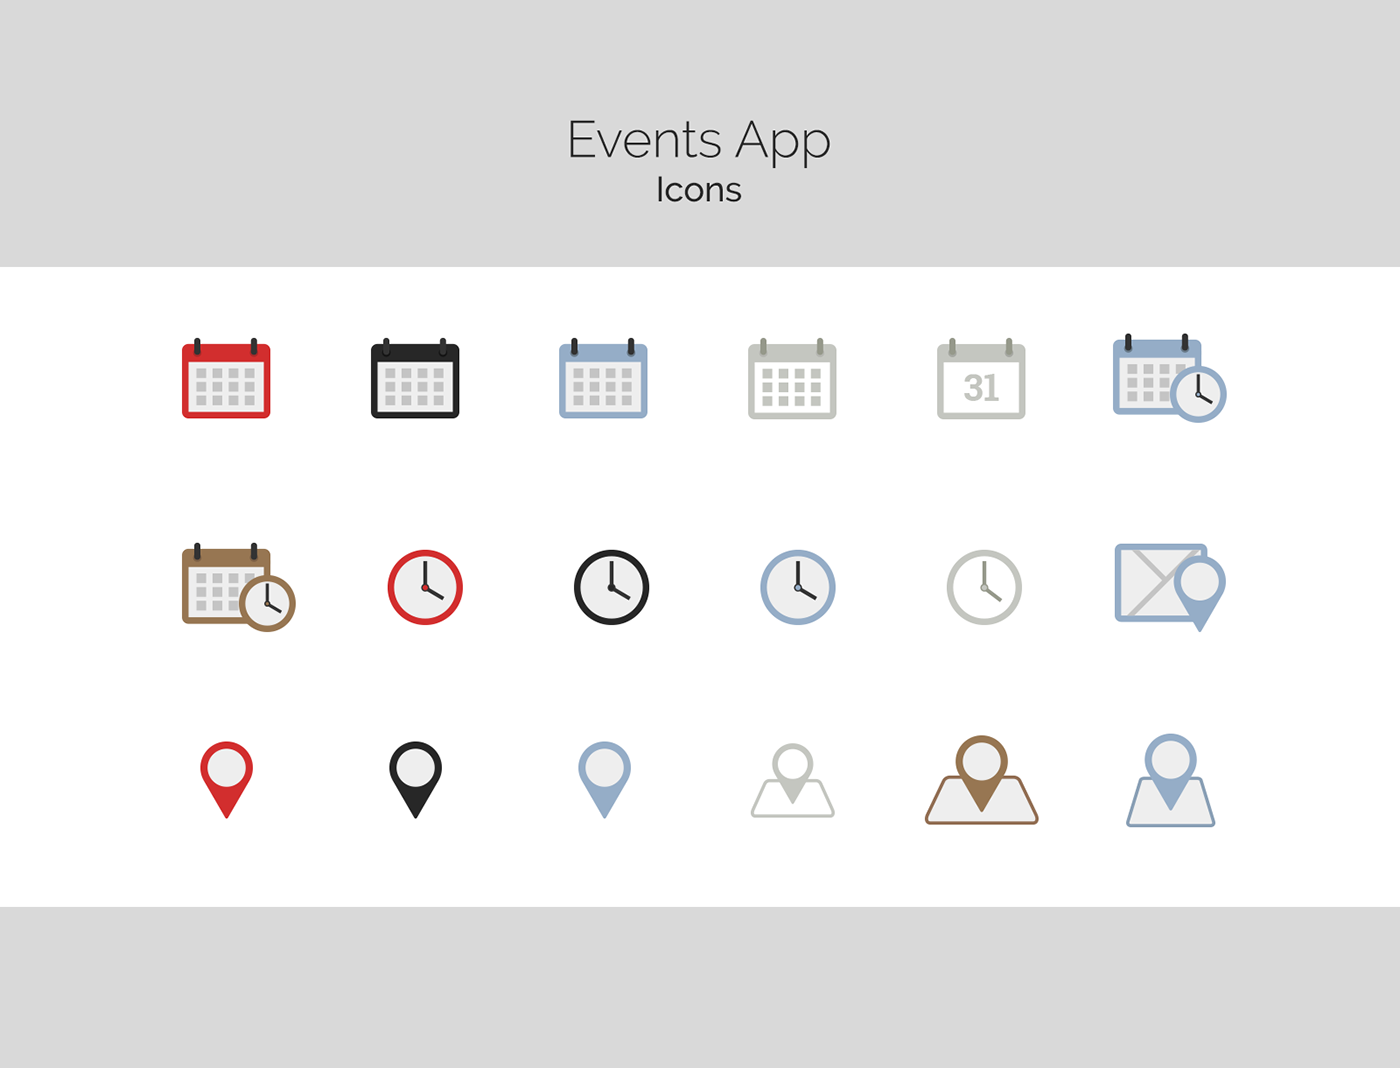 UI UI-design Events app Icon graphic design festival